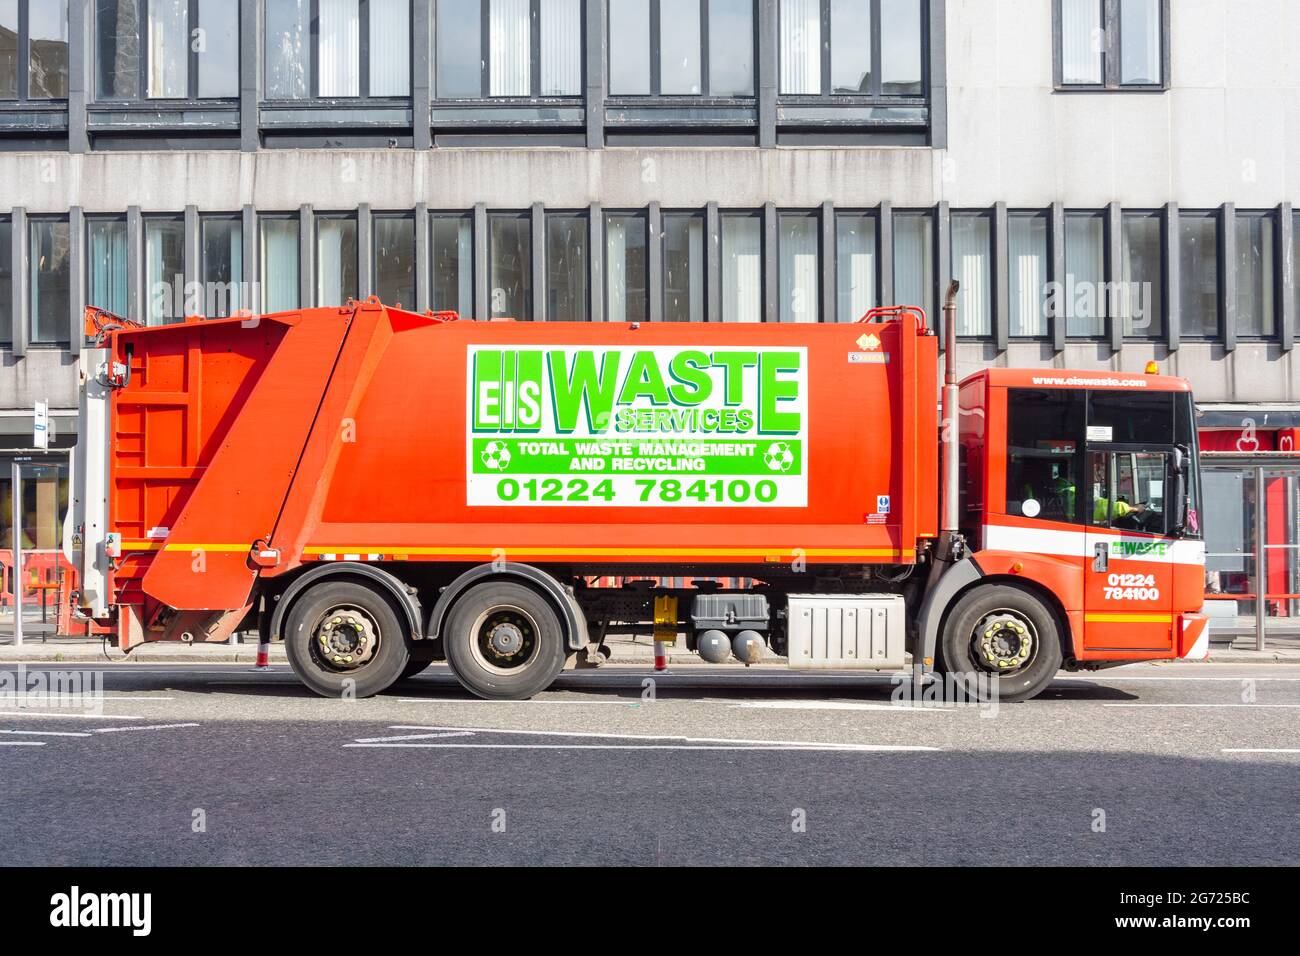 EIS Waste Services rubbish truck, Union Street, City of Aberdeen, Aberdeenshire, Scotland, United Kingdom Stock Photo